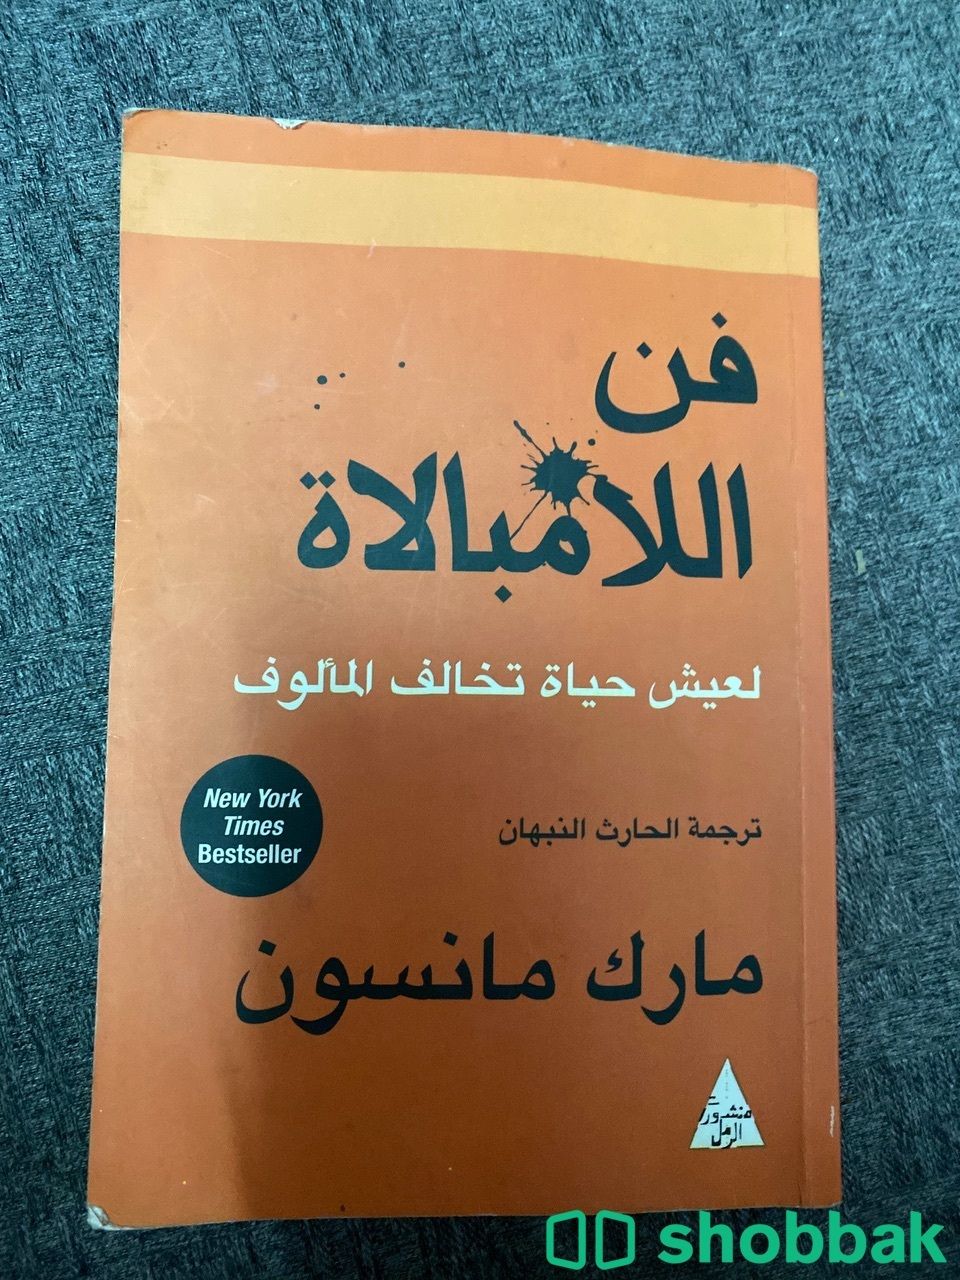 كتاب مستعمل استعمال خفيف  Shobbak Saudi Arabia